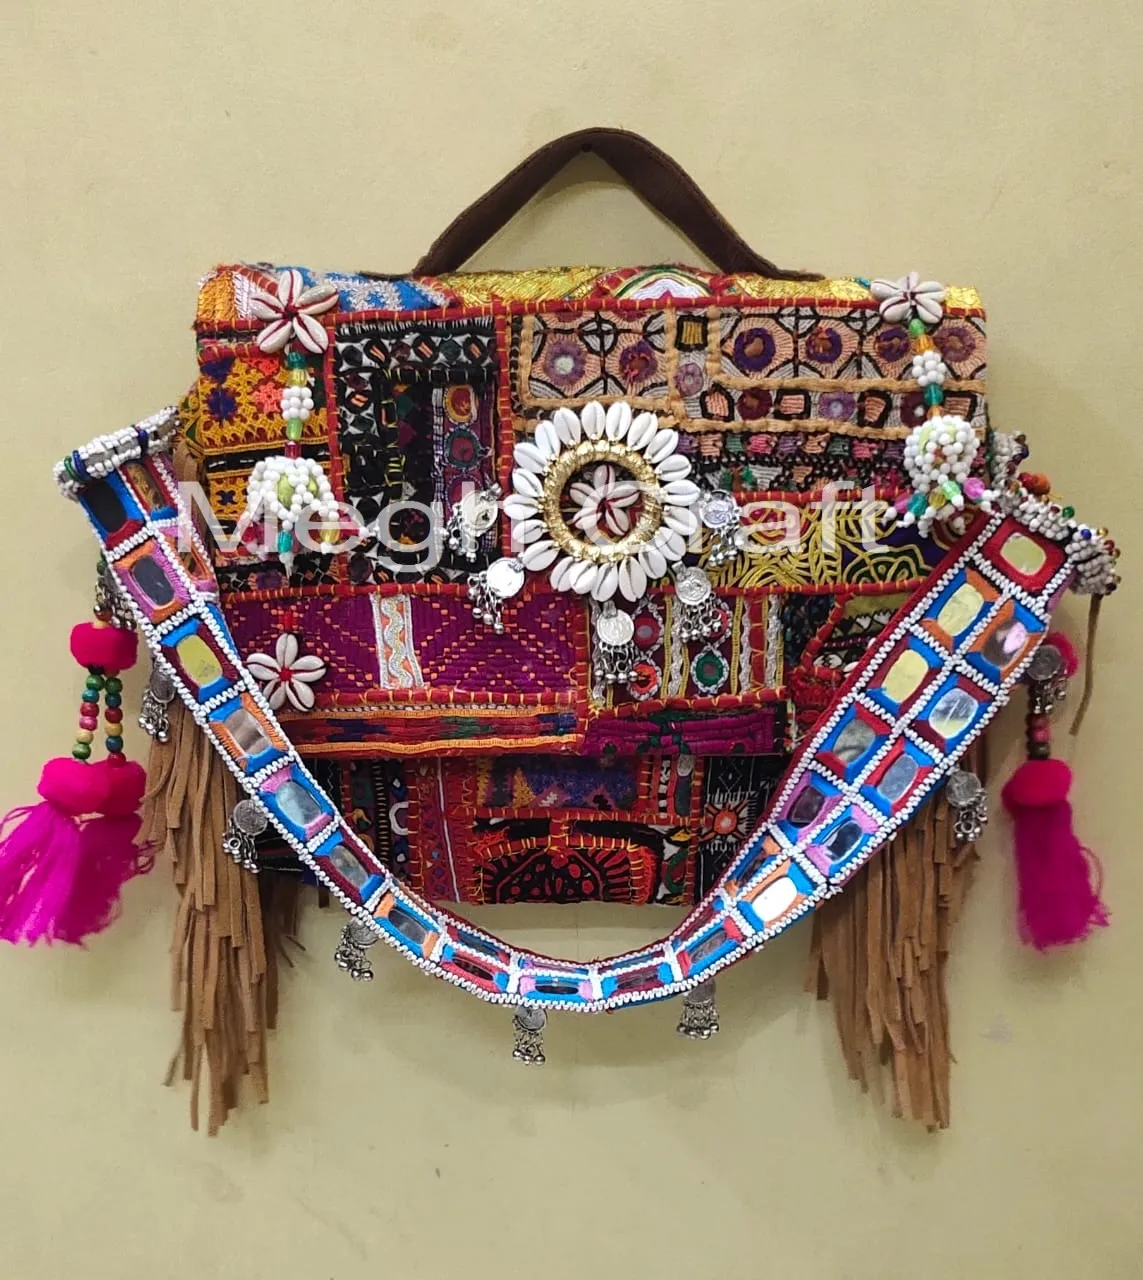 Gujarati Handmade mirror work clutches - Indian Embroidered Banjara vintage Clutch Bag - Vintage leather fringe bag